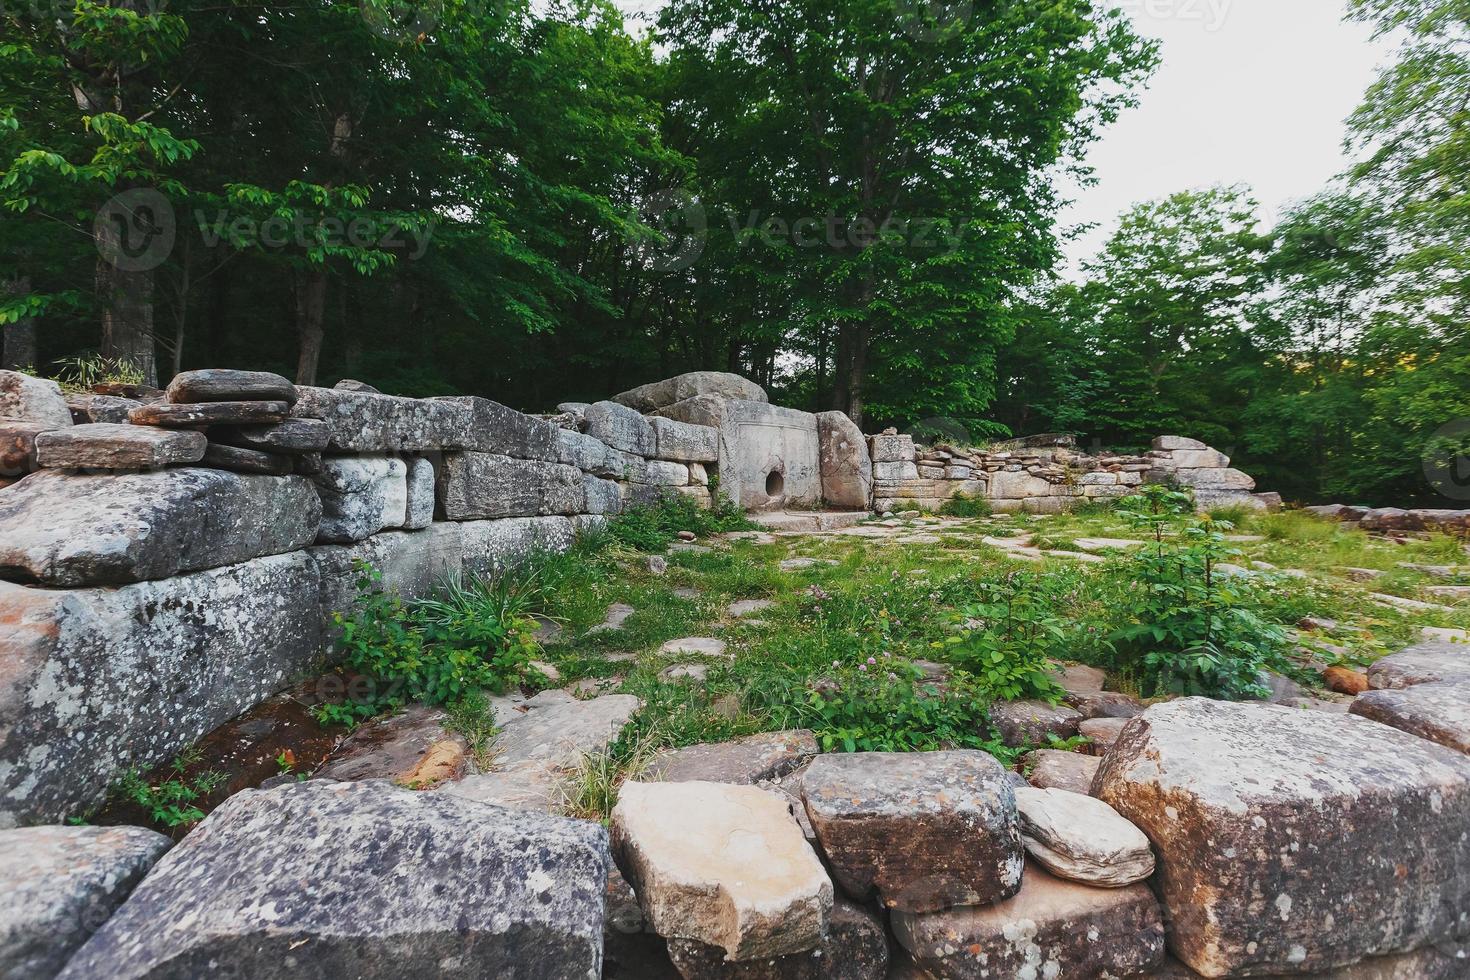 antico piastrelle dolmen nel il valle di il fiume jeans. monumento di archeologia megalitico struttura foto